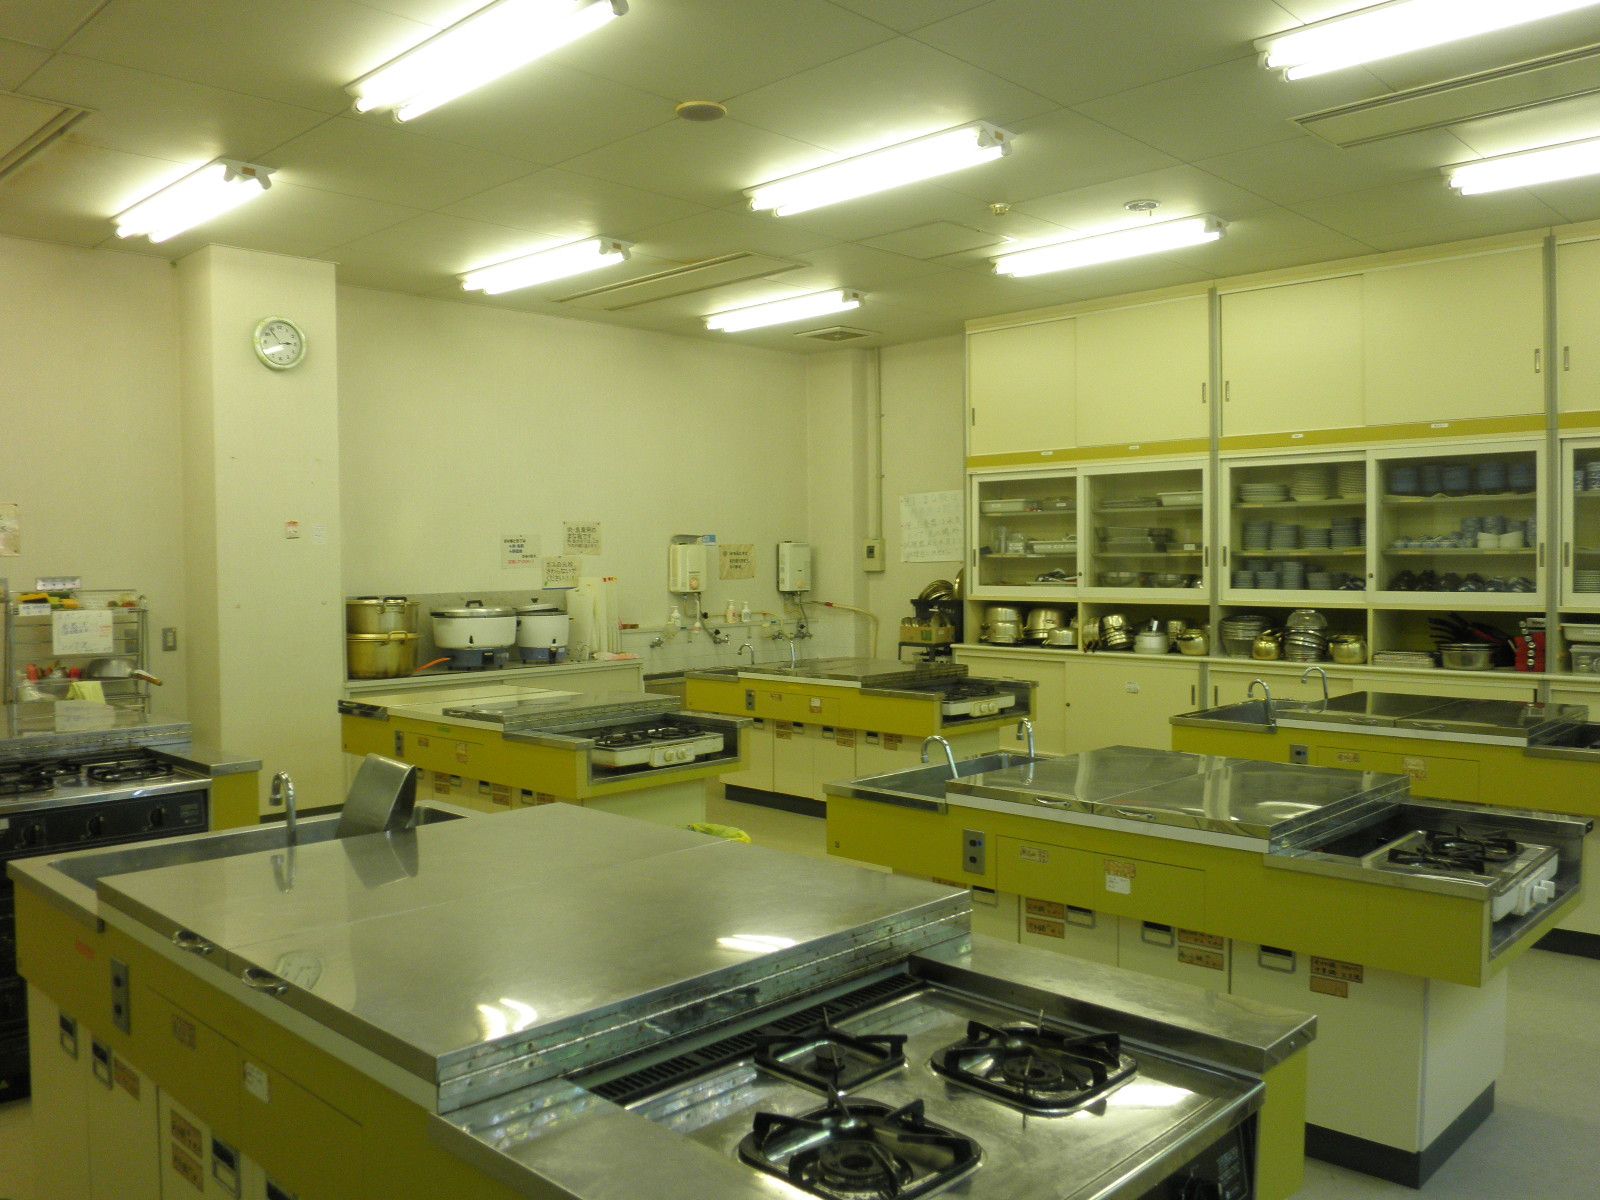 右側の壁には鍋や調理器具が収納されている棚、ガスコンロが設置されている調理台が6台並んでいる調理室の写真